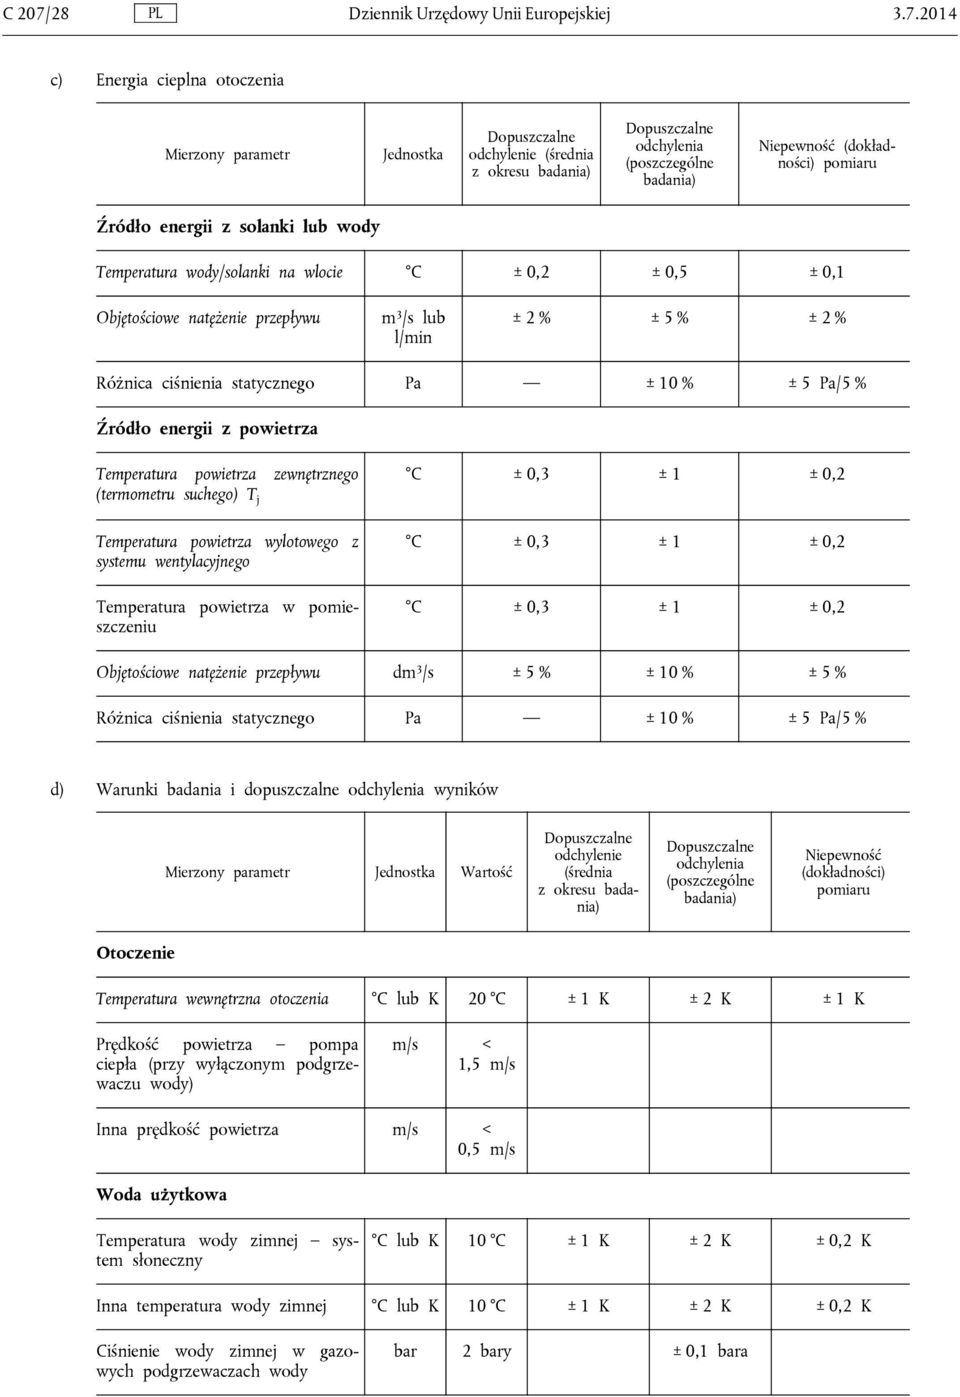 2014 c) Energia cieplna otoczenia Mierzony parametr Jednostka Dopuszczalne odchylenie (średnia z okresu badania) Dopuszczalne odchylenia (poszczególne badania) Niepewność (dokładności) pomiaru Źródło